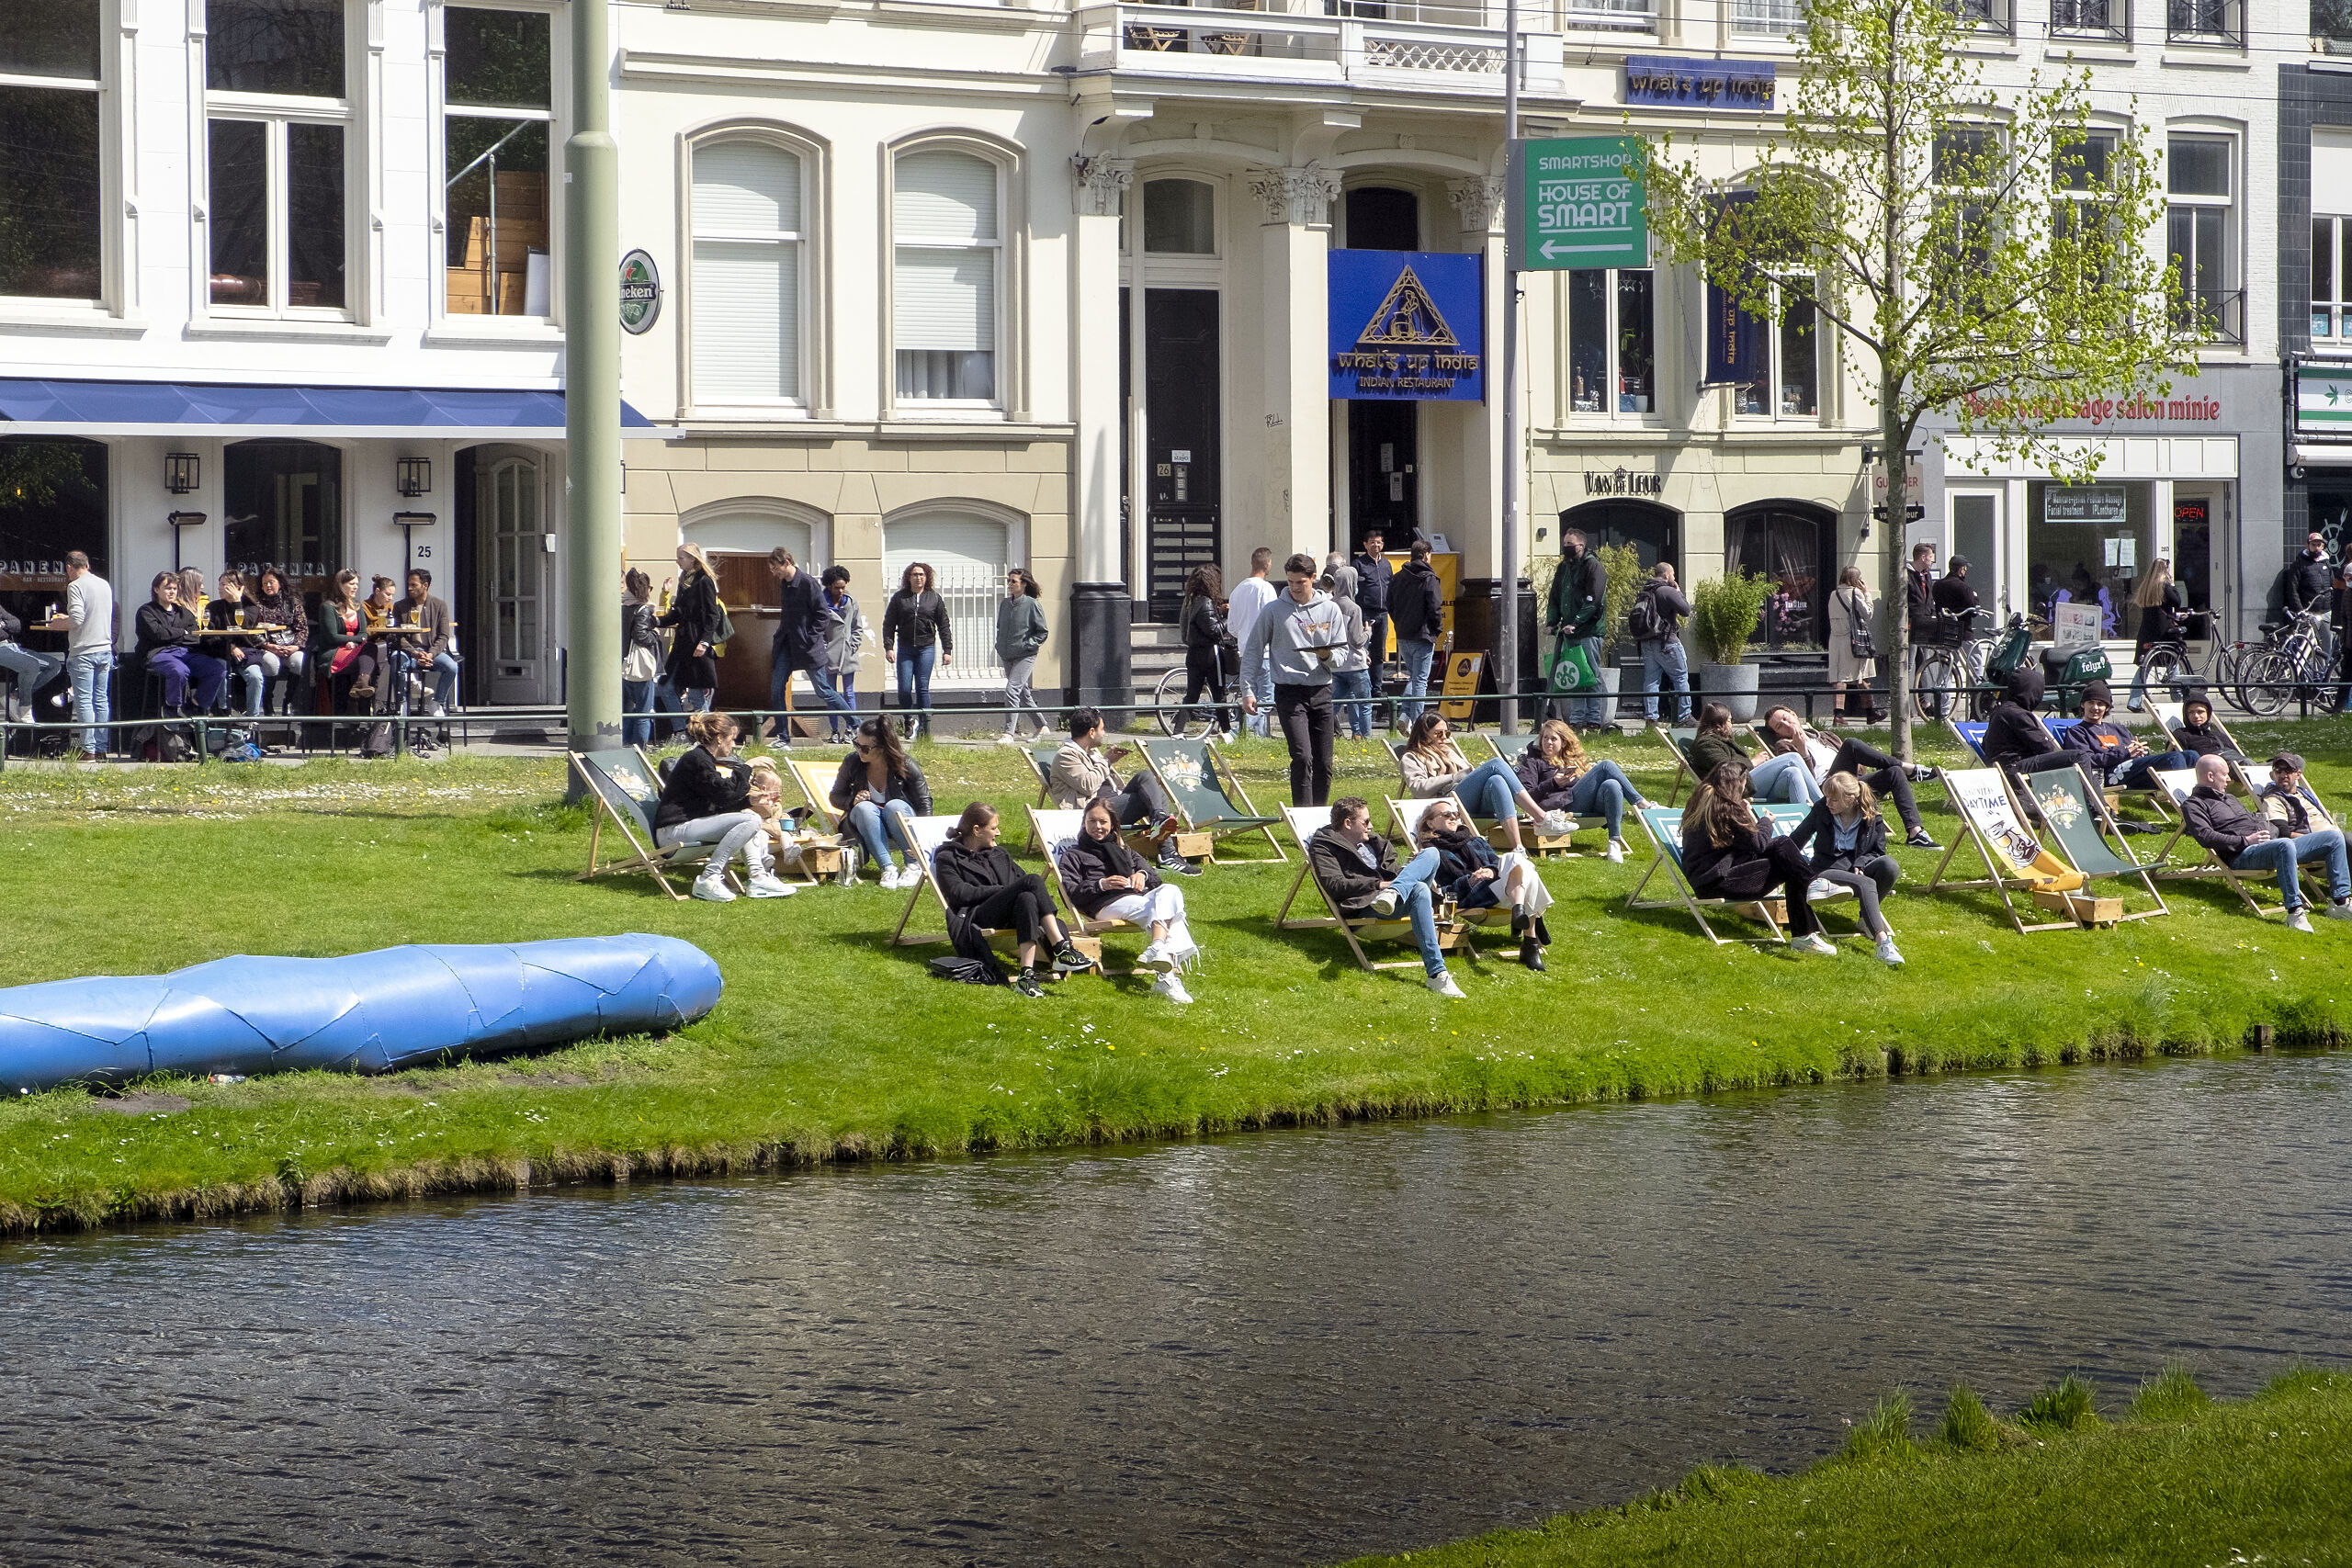 Rotterdam. Het cafe en restaurant Panenka op de Eendrachtsweg in Rotterdam centrum. Vooral studenten en jongeren zitten in de ligstoelen op het grasveld. Foto: ANP / Hollandse Hoogte / Hans van Rhoon